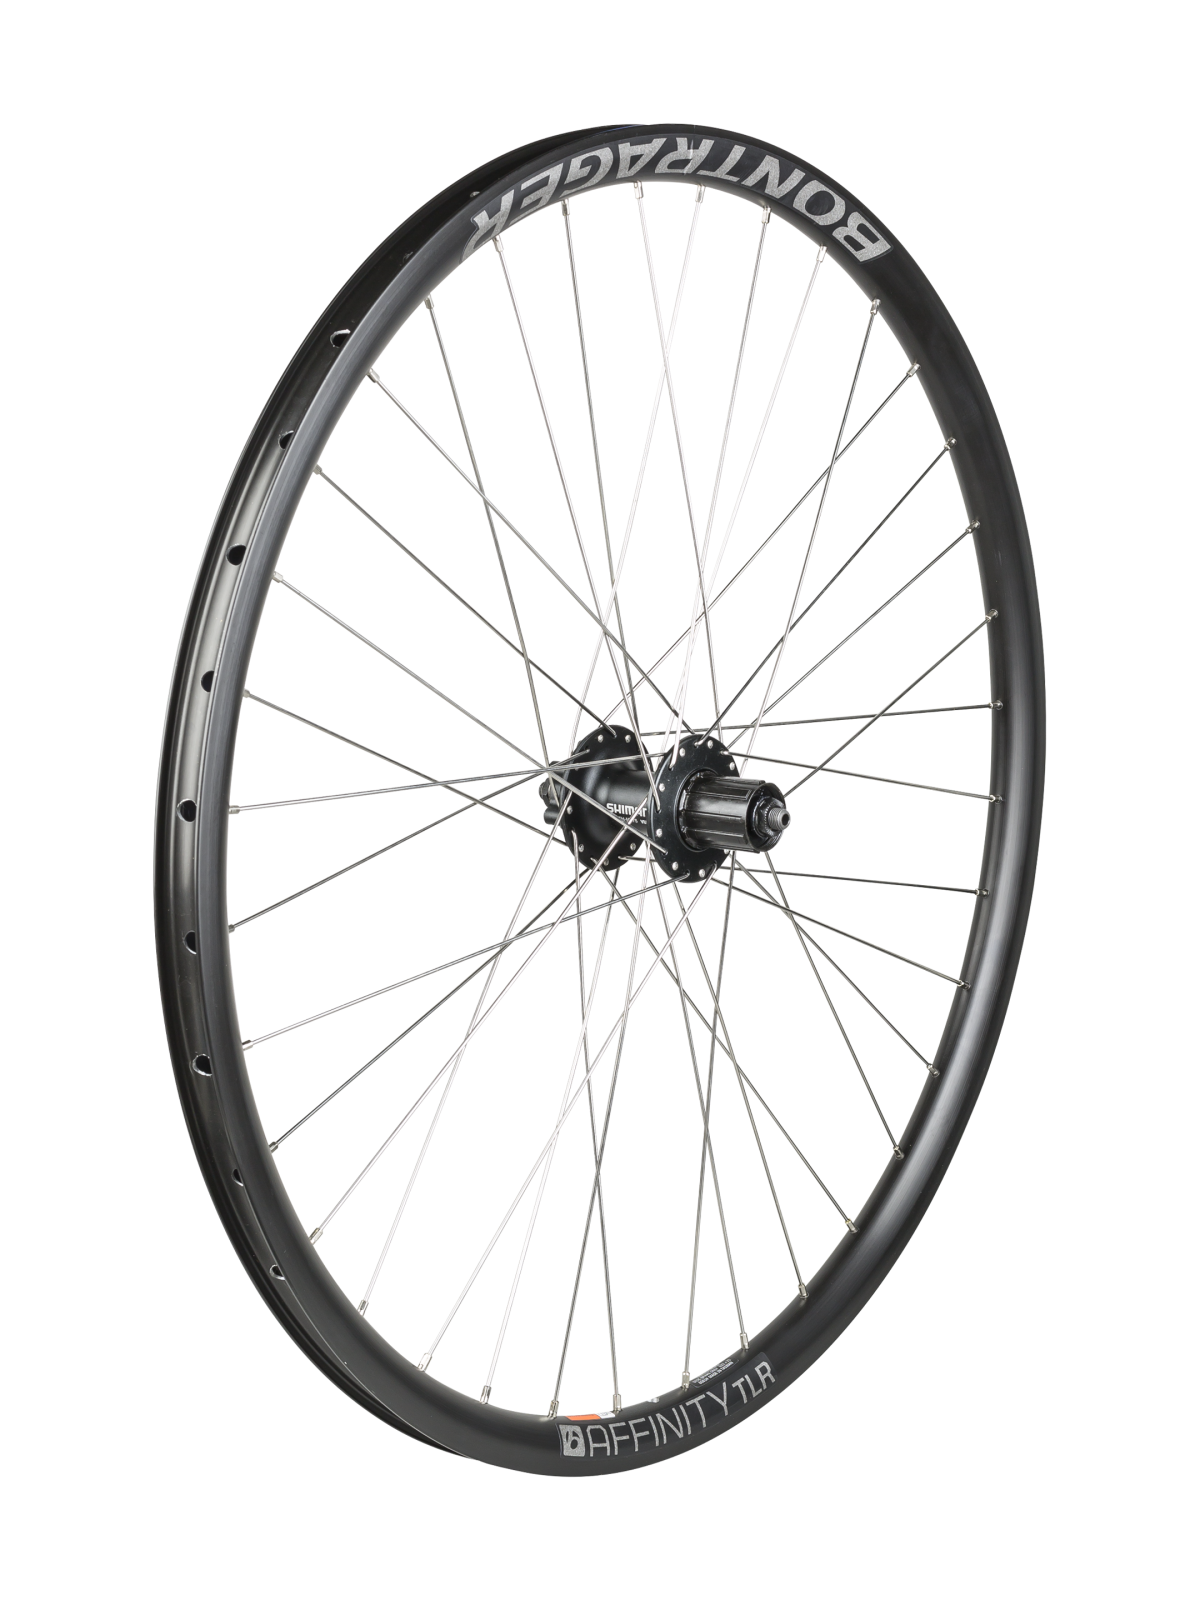 Bontrager Affinity TLR Shimano M475 Disc 700c Road Wheel - Trek 